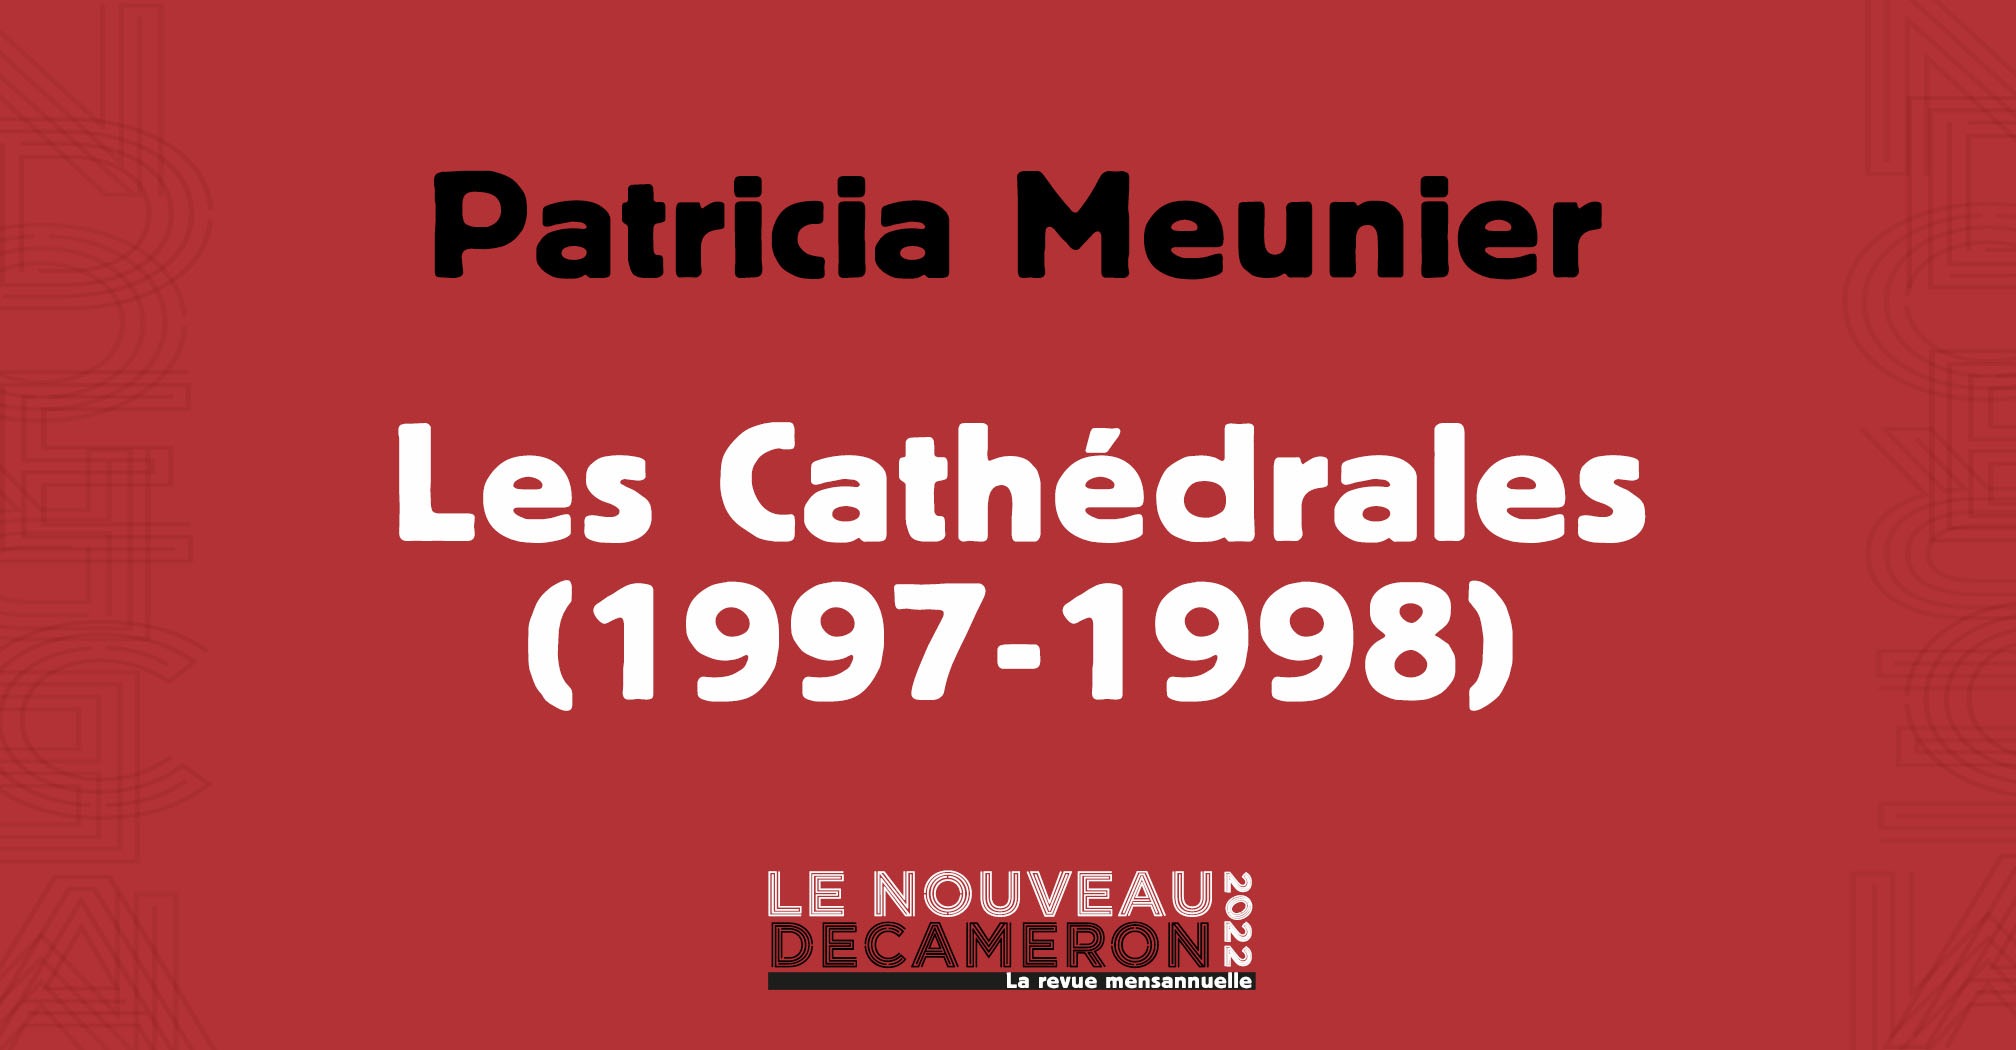 Patricia Meunier - Les Cathédrales (1997-1998)